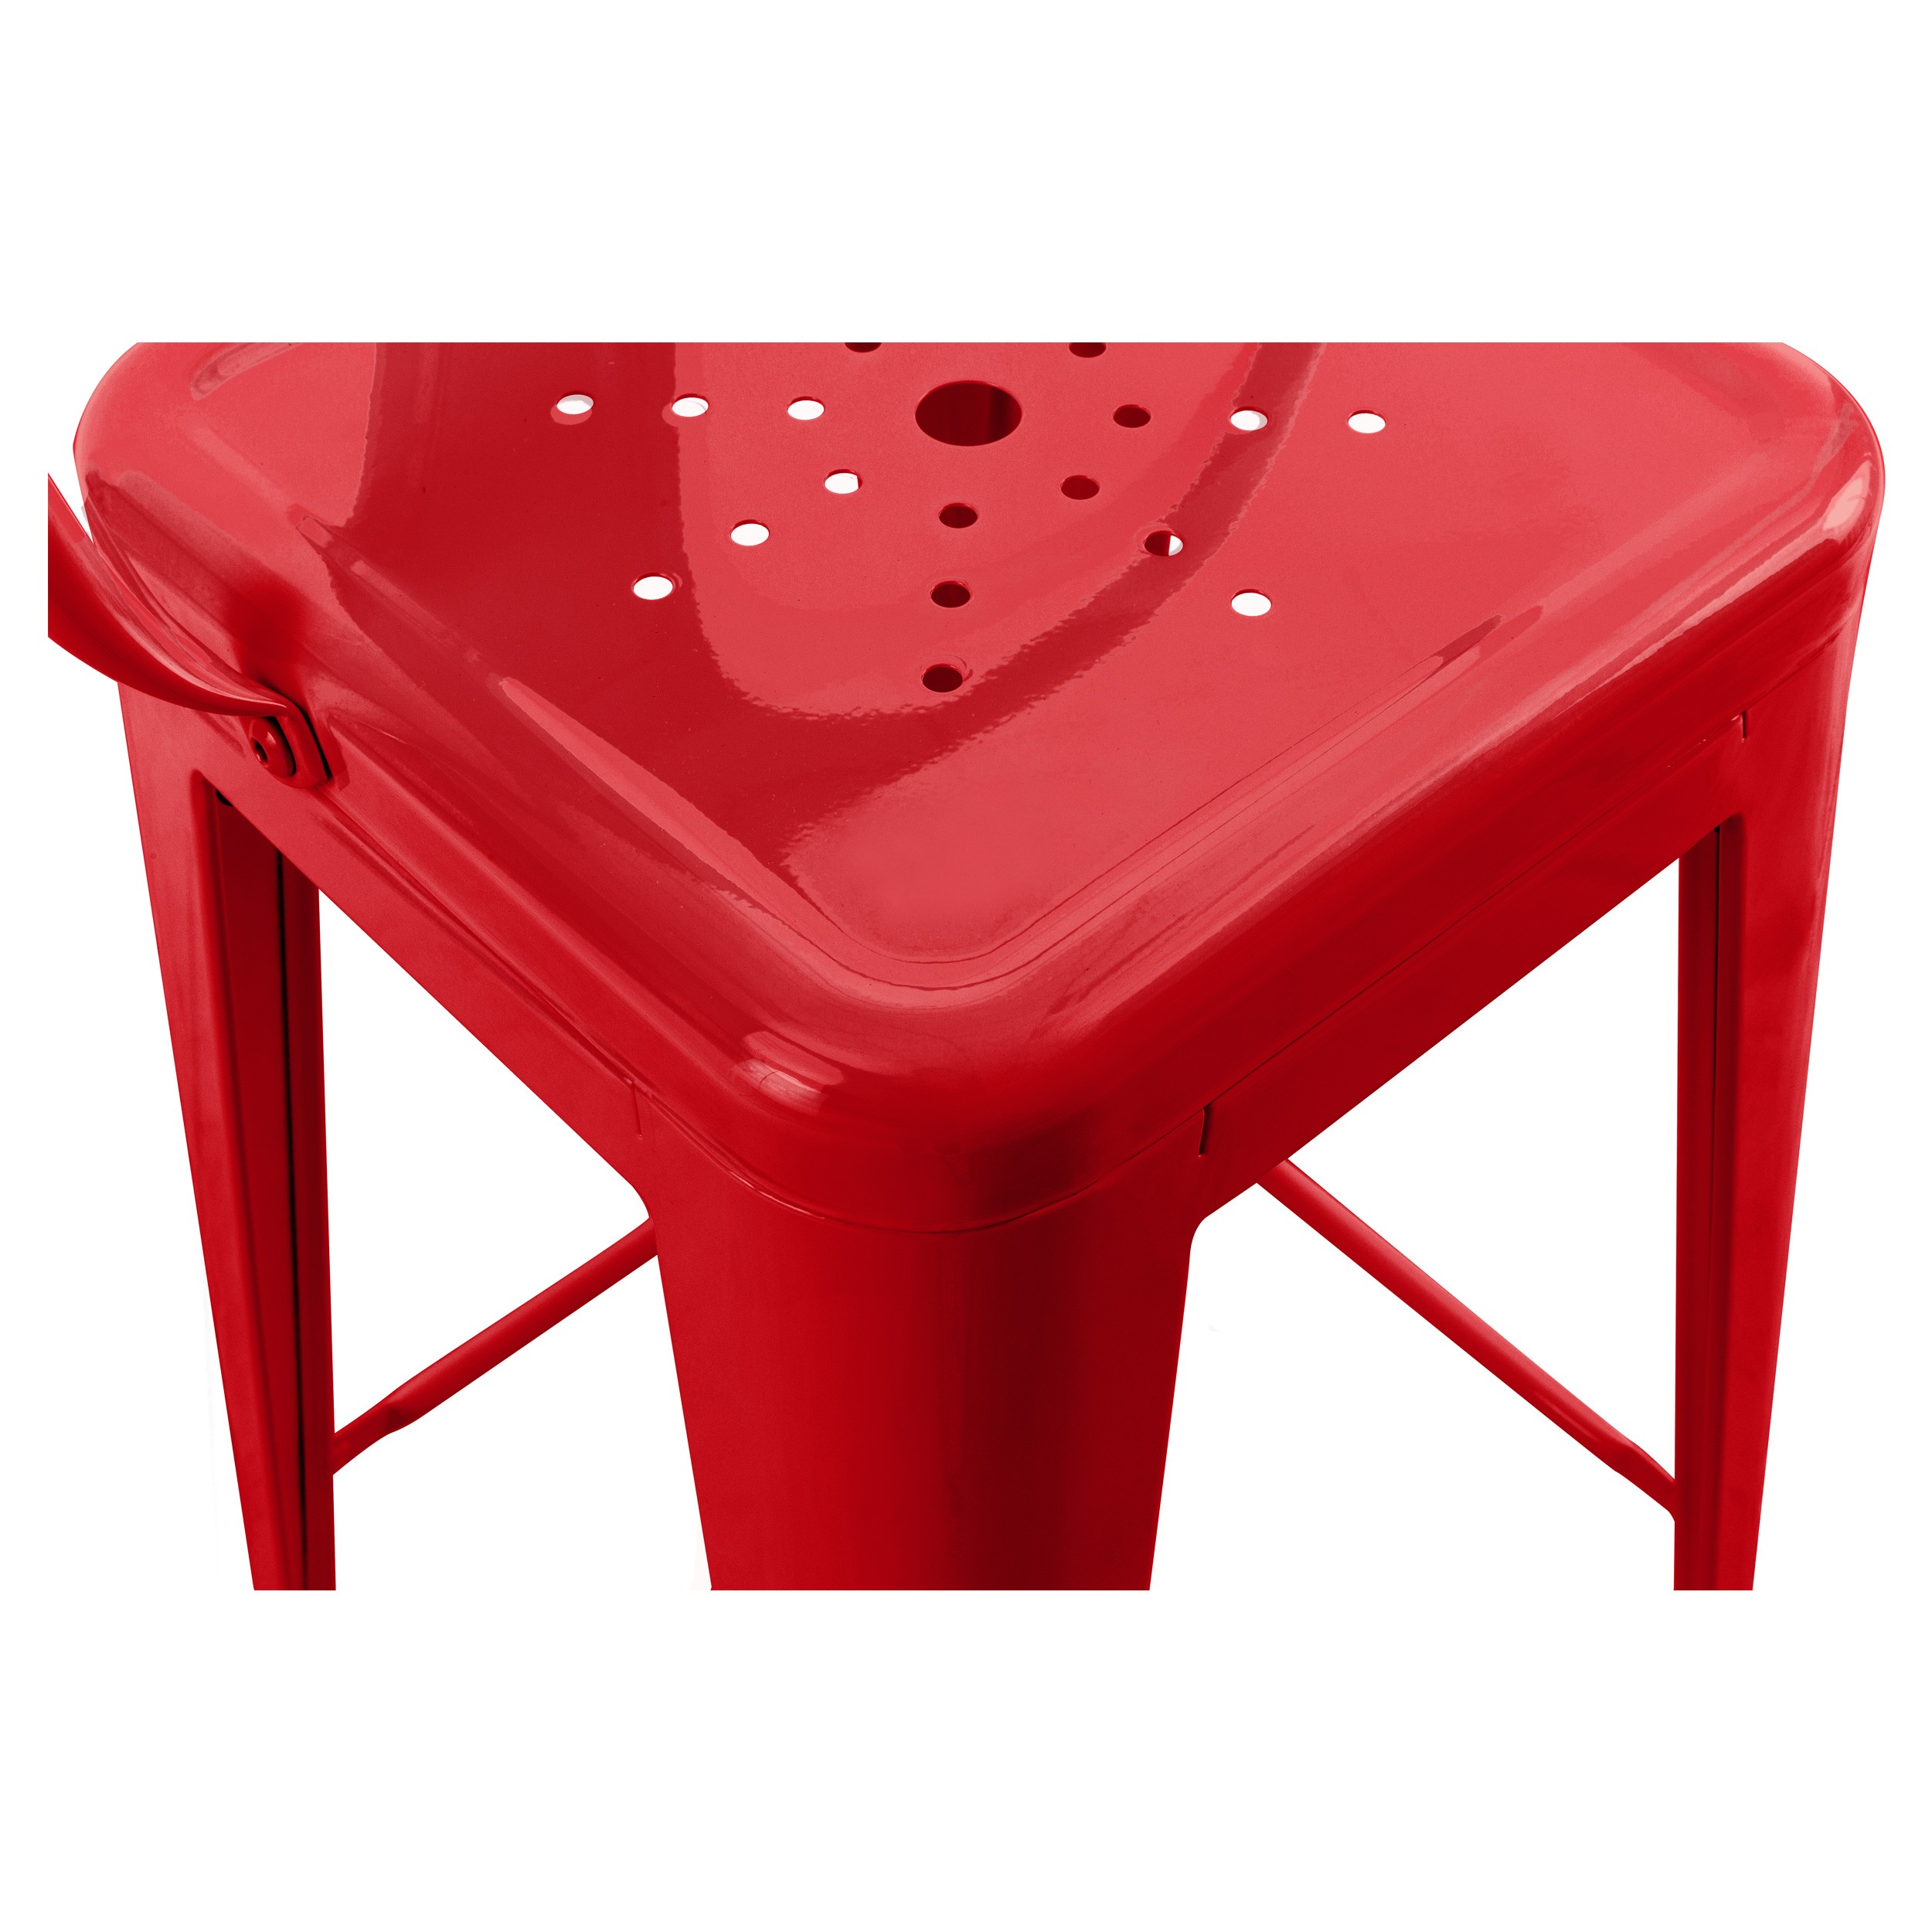 Chaise de bar Indus rouge 66 cm (lot de 2)  achetez les chaises de bar